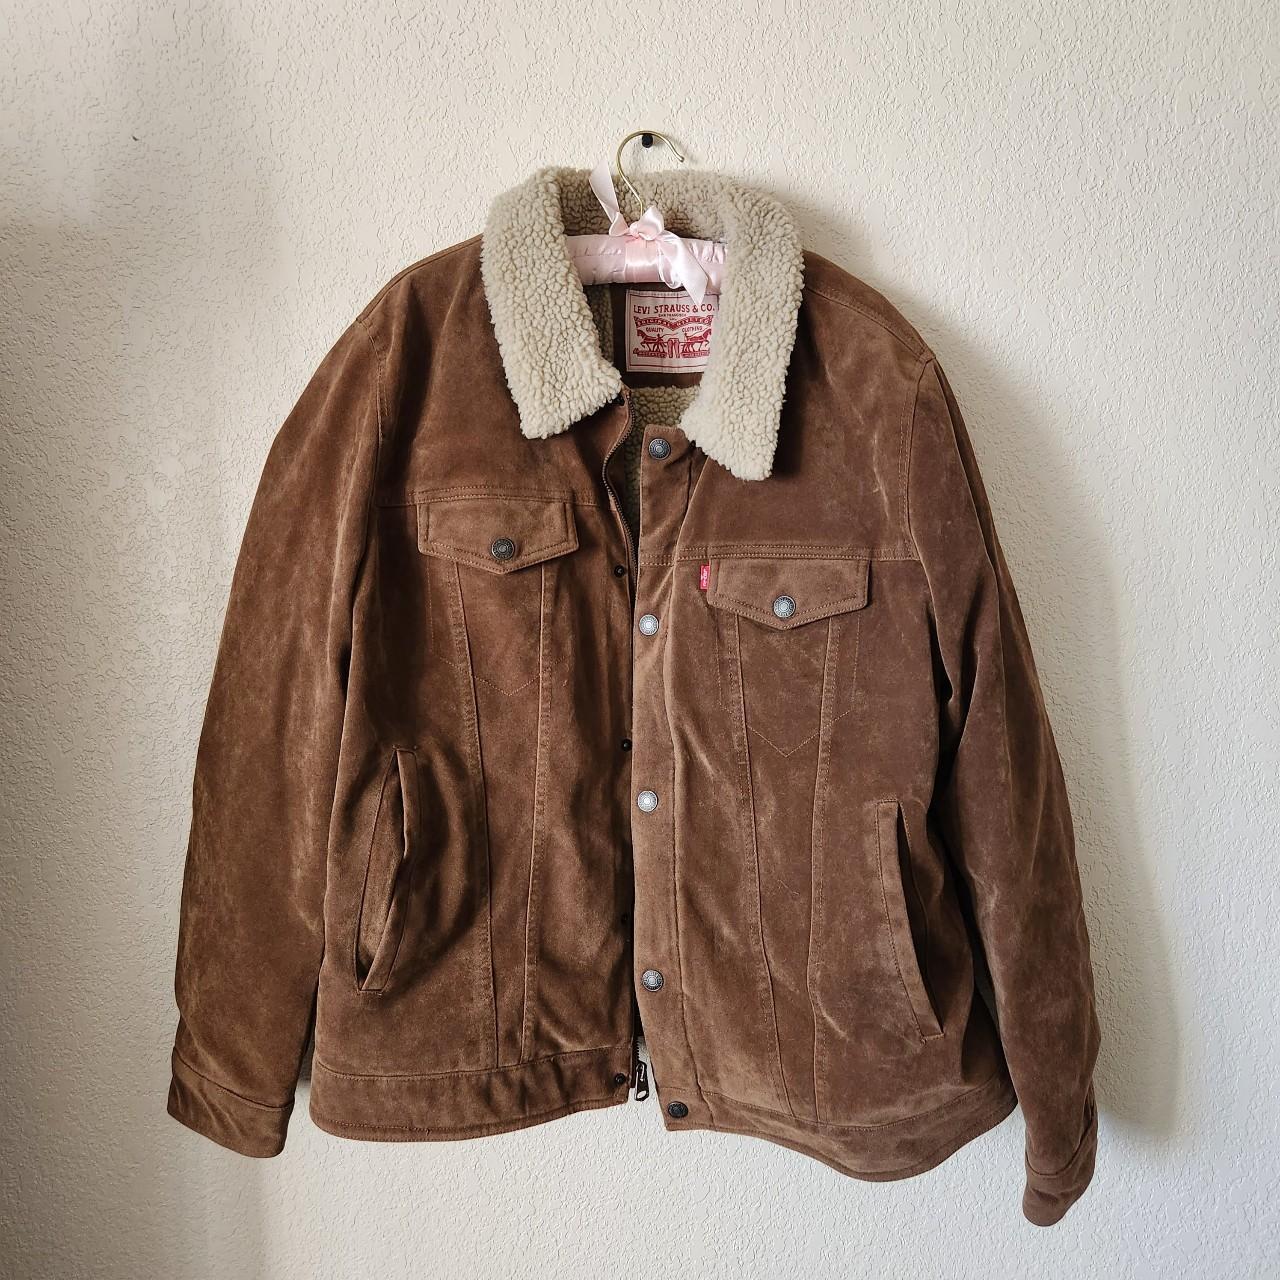 Levi's light brown jacket - Depop